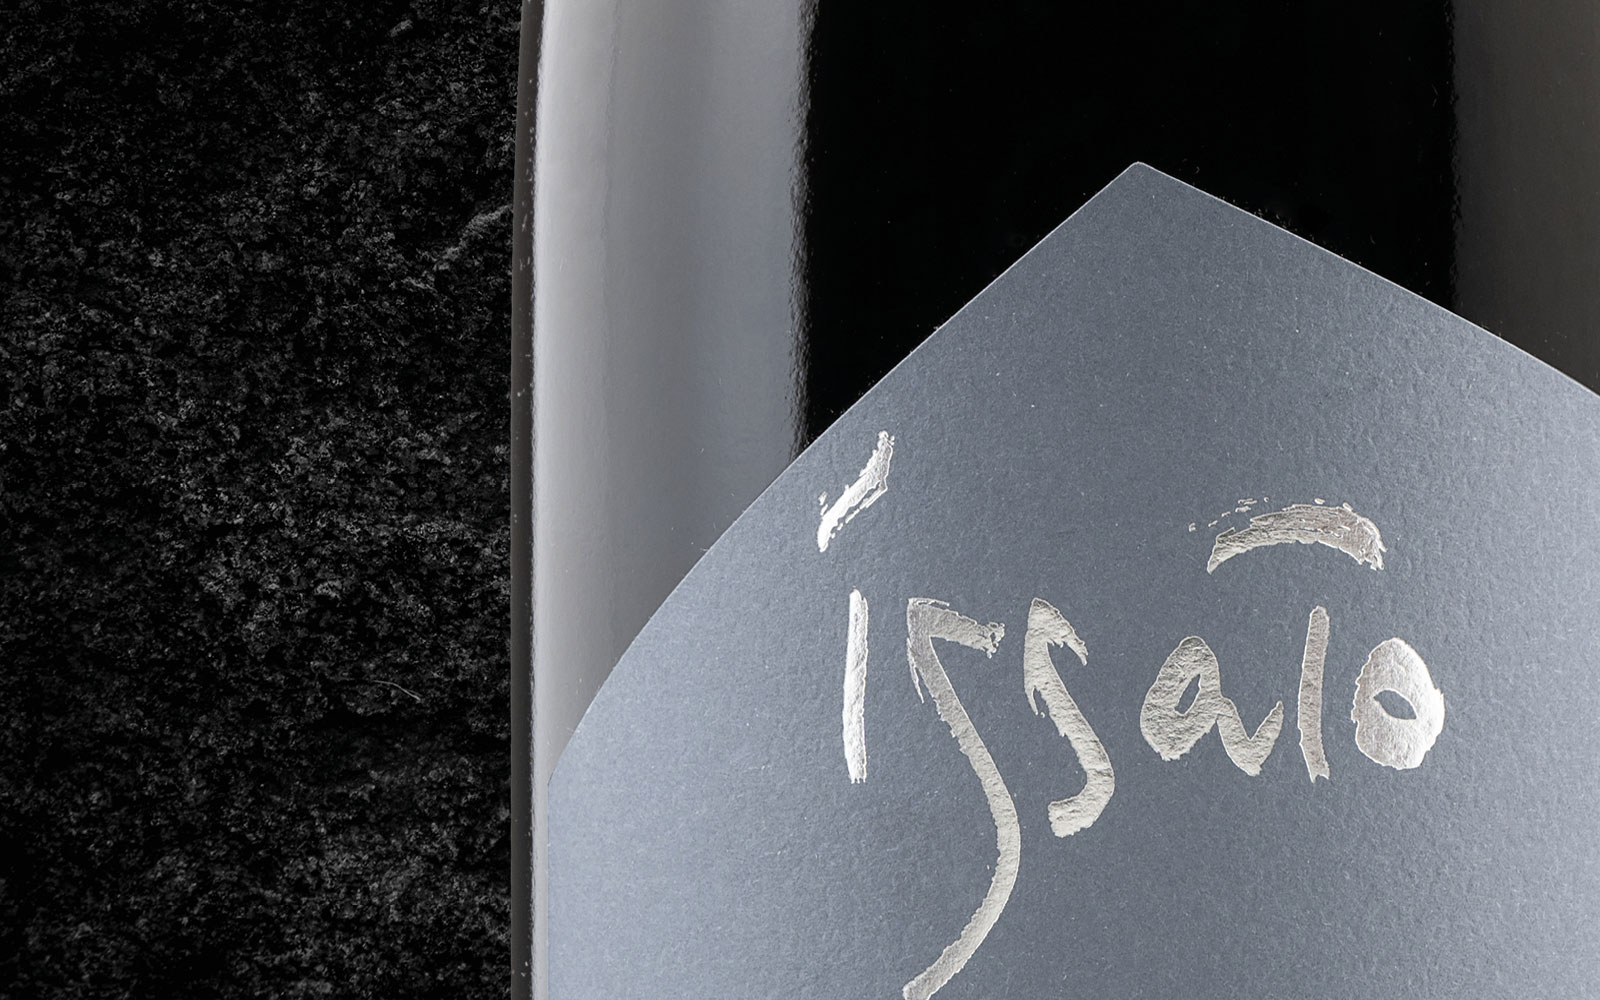 deddaglio del design del logo presente sul fronte dell'etichetta vino rosso issato cantina salim progetto diadestudio